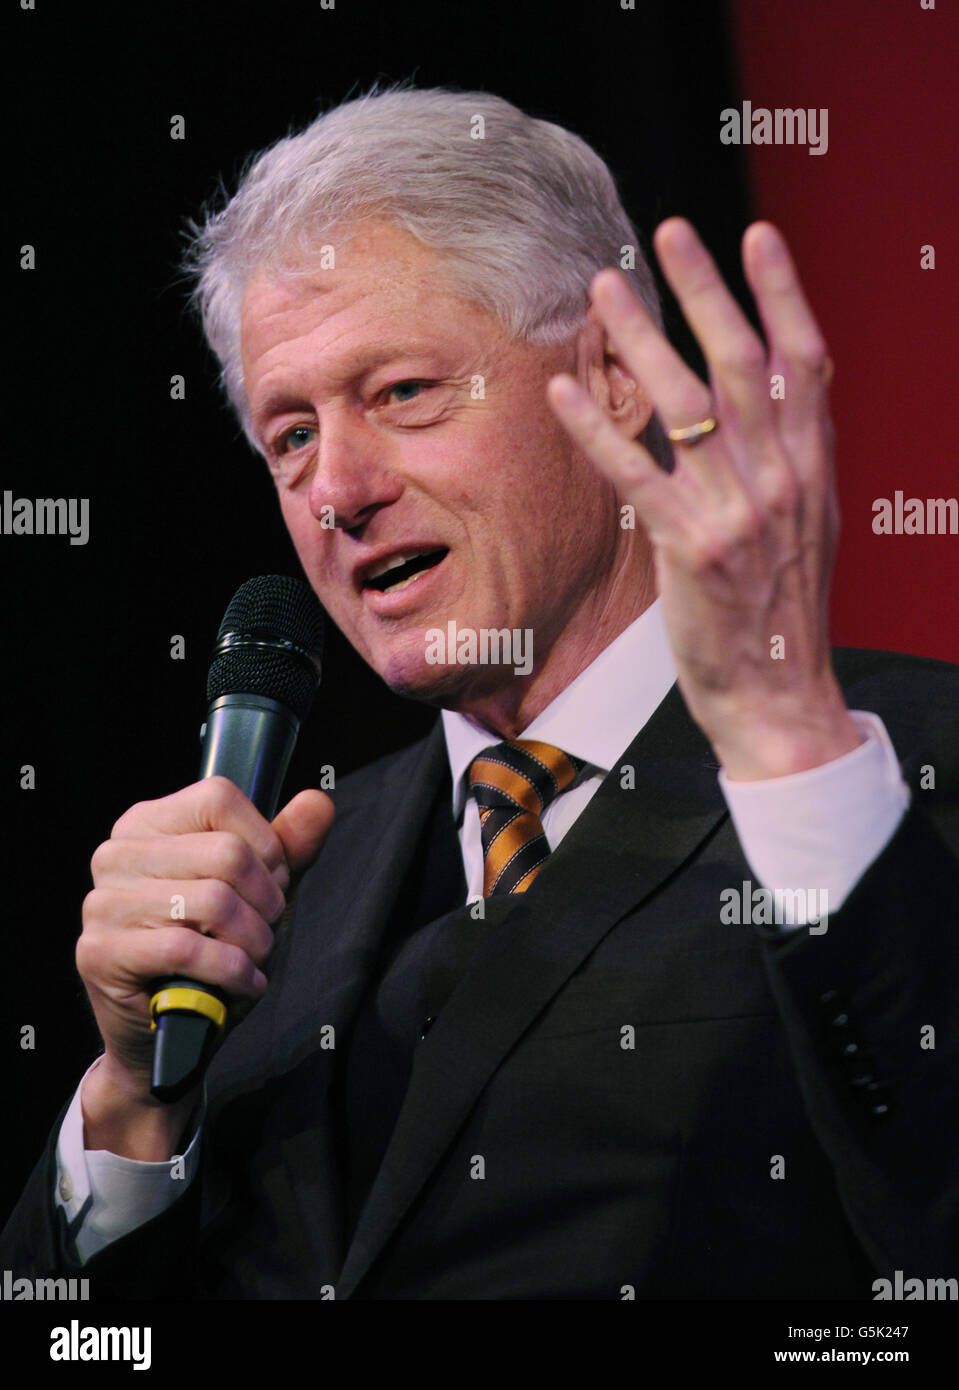 Der ehemalige US-Präsident Bill Clinton spricht bei einer Veranstaltung des Policy Network in der Royal Institution of Great Britain im Zentrum von London. Stockfoto